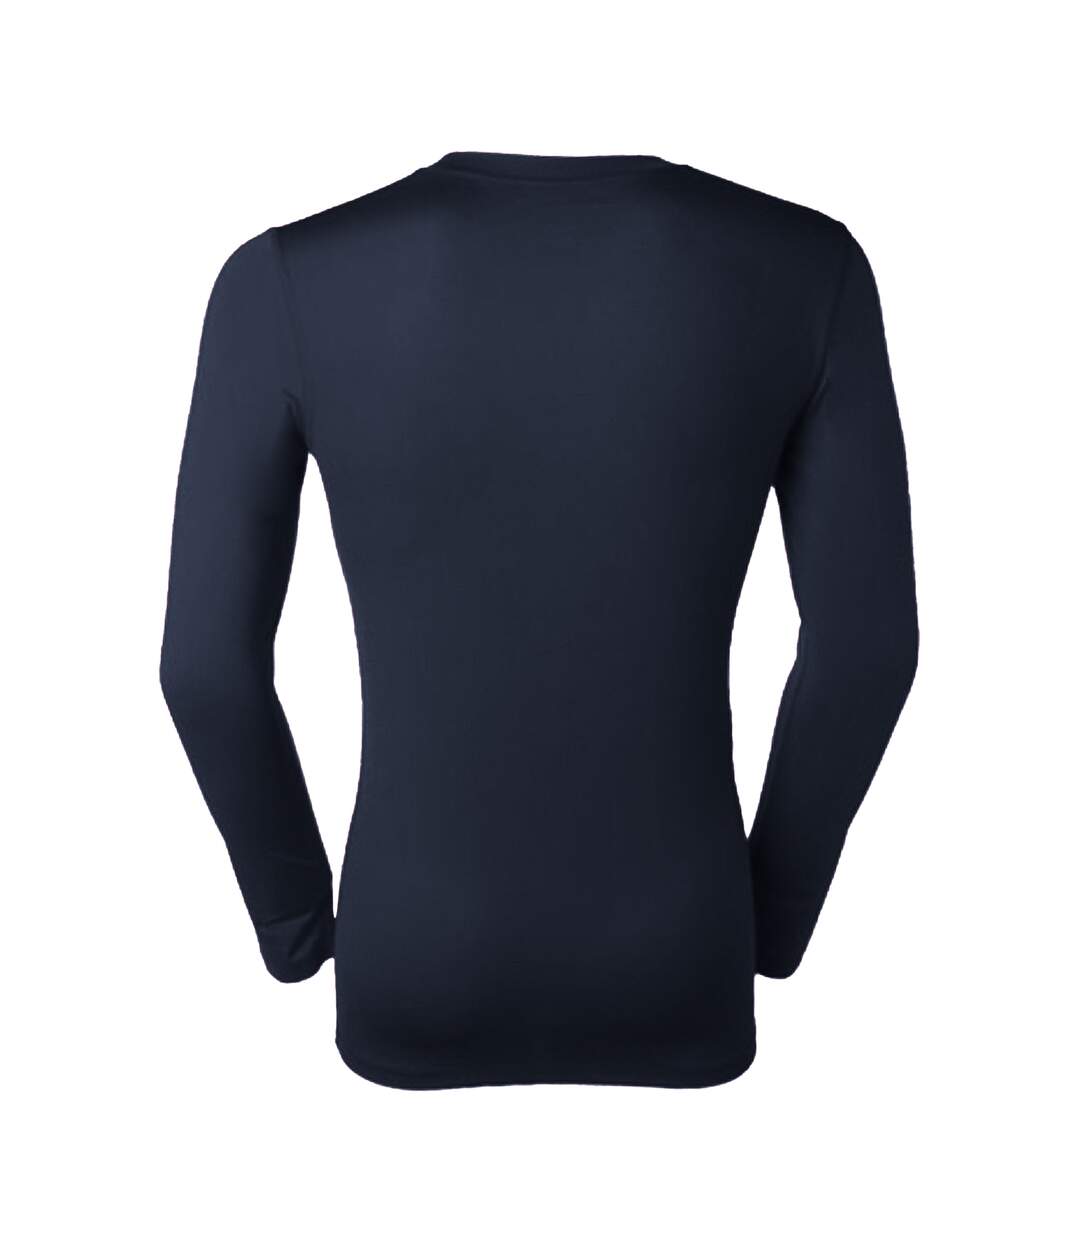 Gamegear® Warmtex - T-shirt thermique à manches longues - Homme (Blanc) - UTBC438